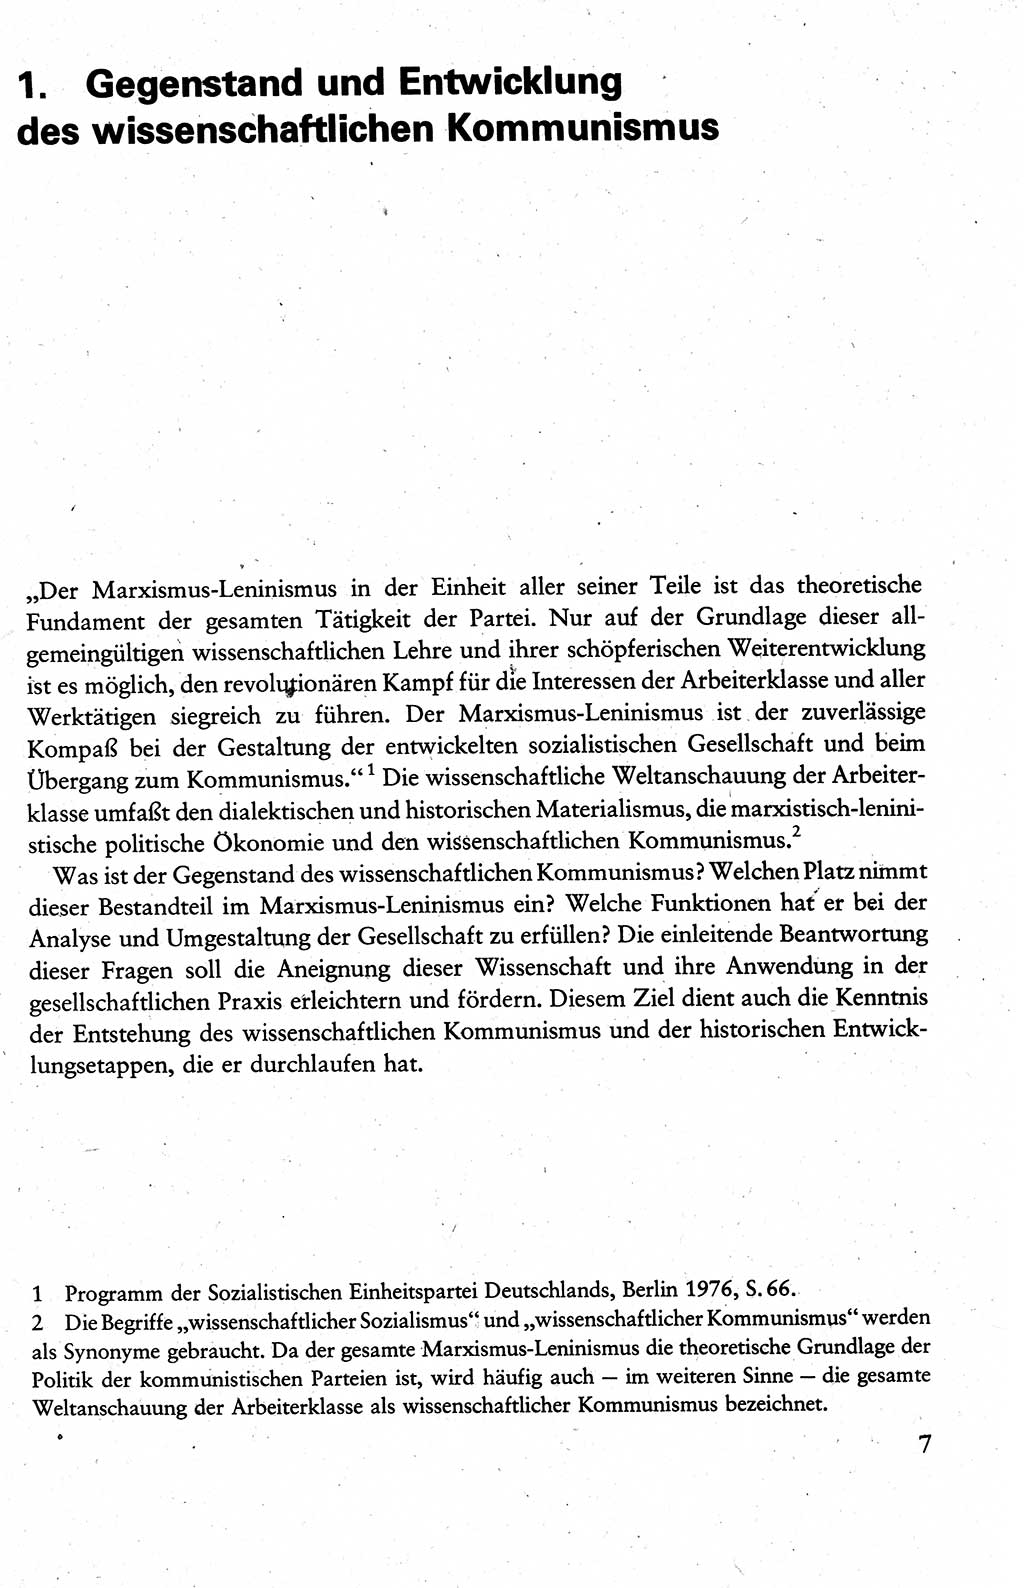 Wissenschaftlicher Kommunismus [Deutsche Demokratische Republik (DDR)], Lehrbuch für das marxistisch-leninistische Grundlagenstudium 1983, Seite 7 (Wiss. Komm. DDR Lb. 1983, S. 7)